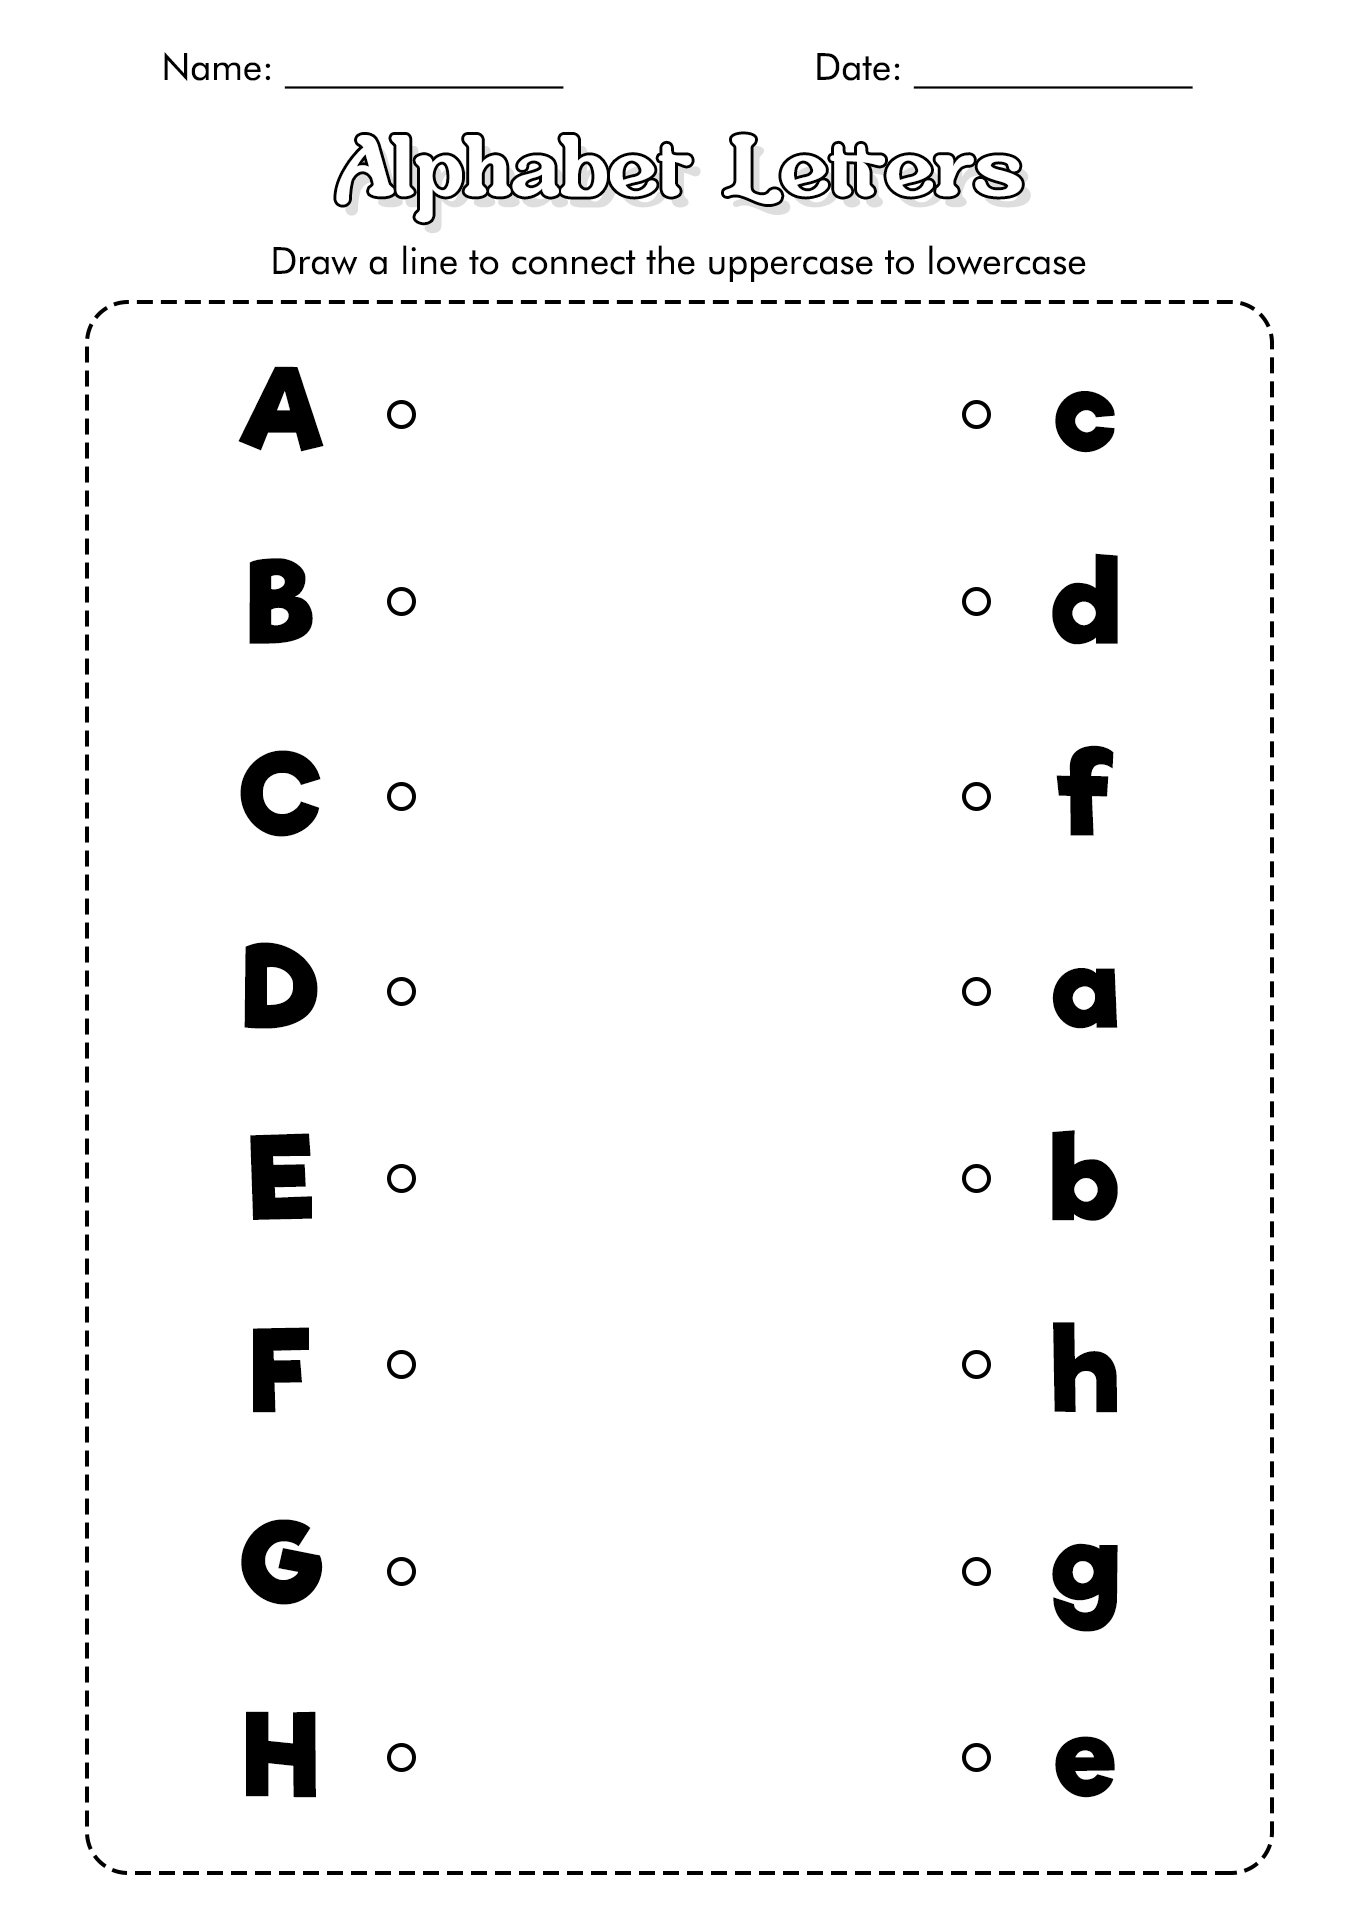 preschool-number-recognition-games-1-10-online-worksheets